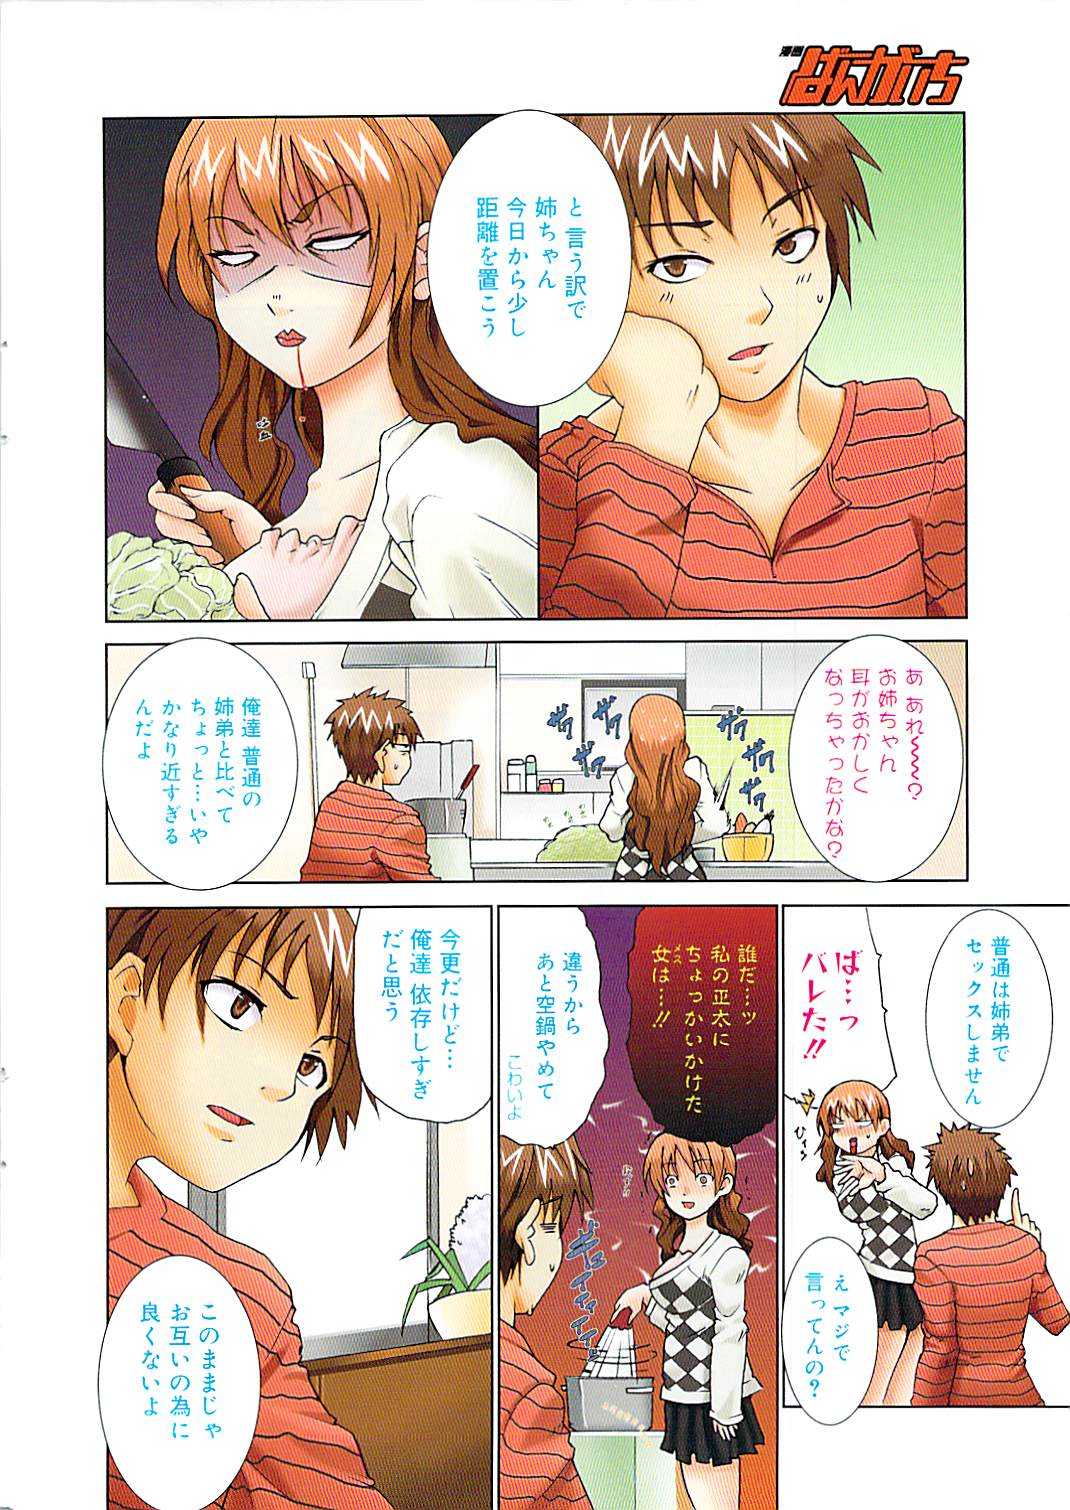 Manga Bangaichi 2009-04 Vol. 236 漫画ばんがいち 2009年4月号 VOL.236